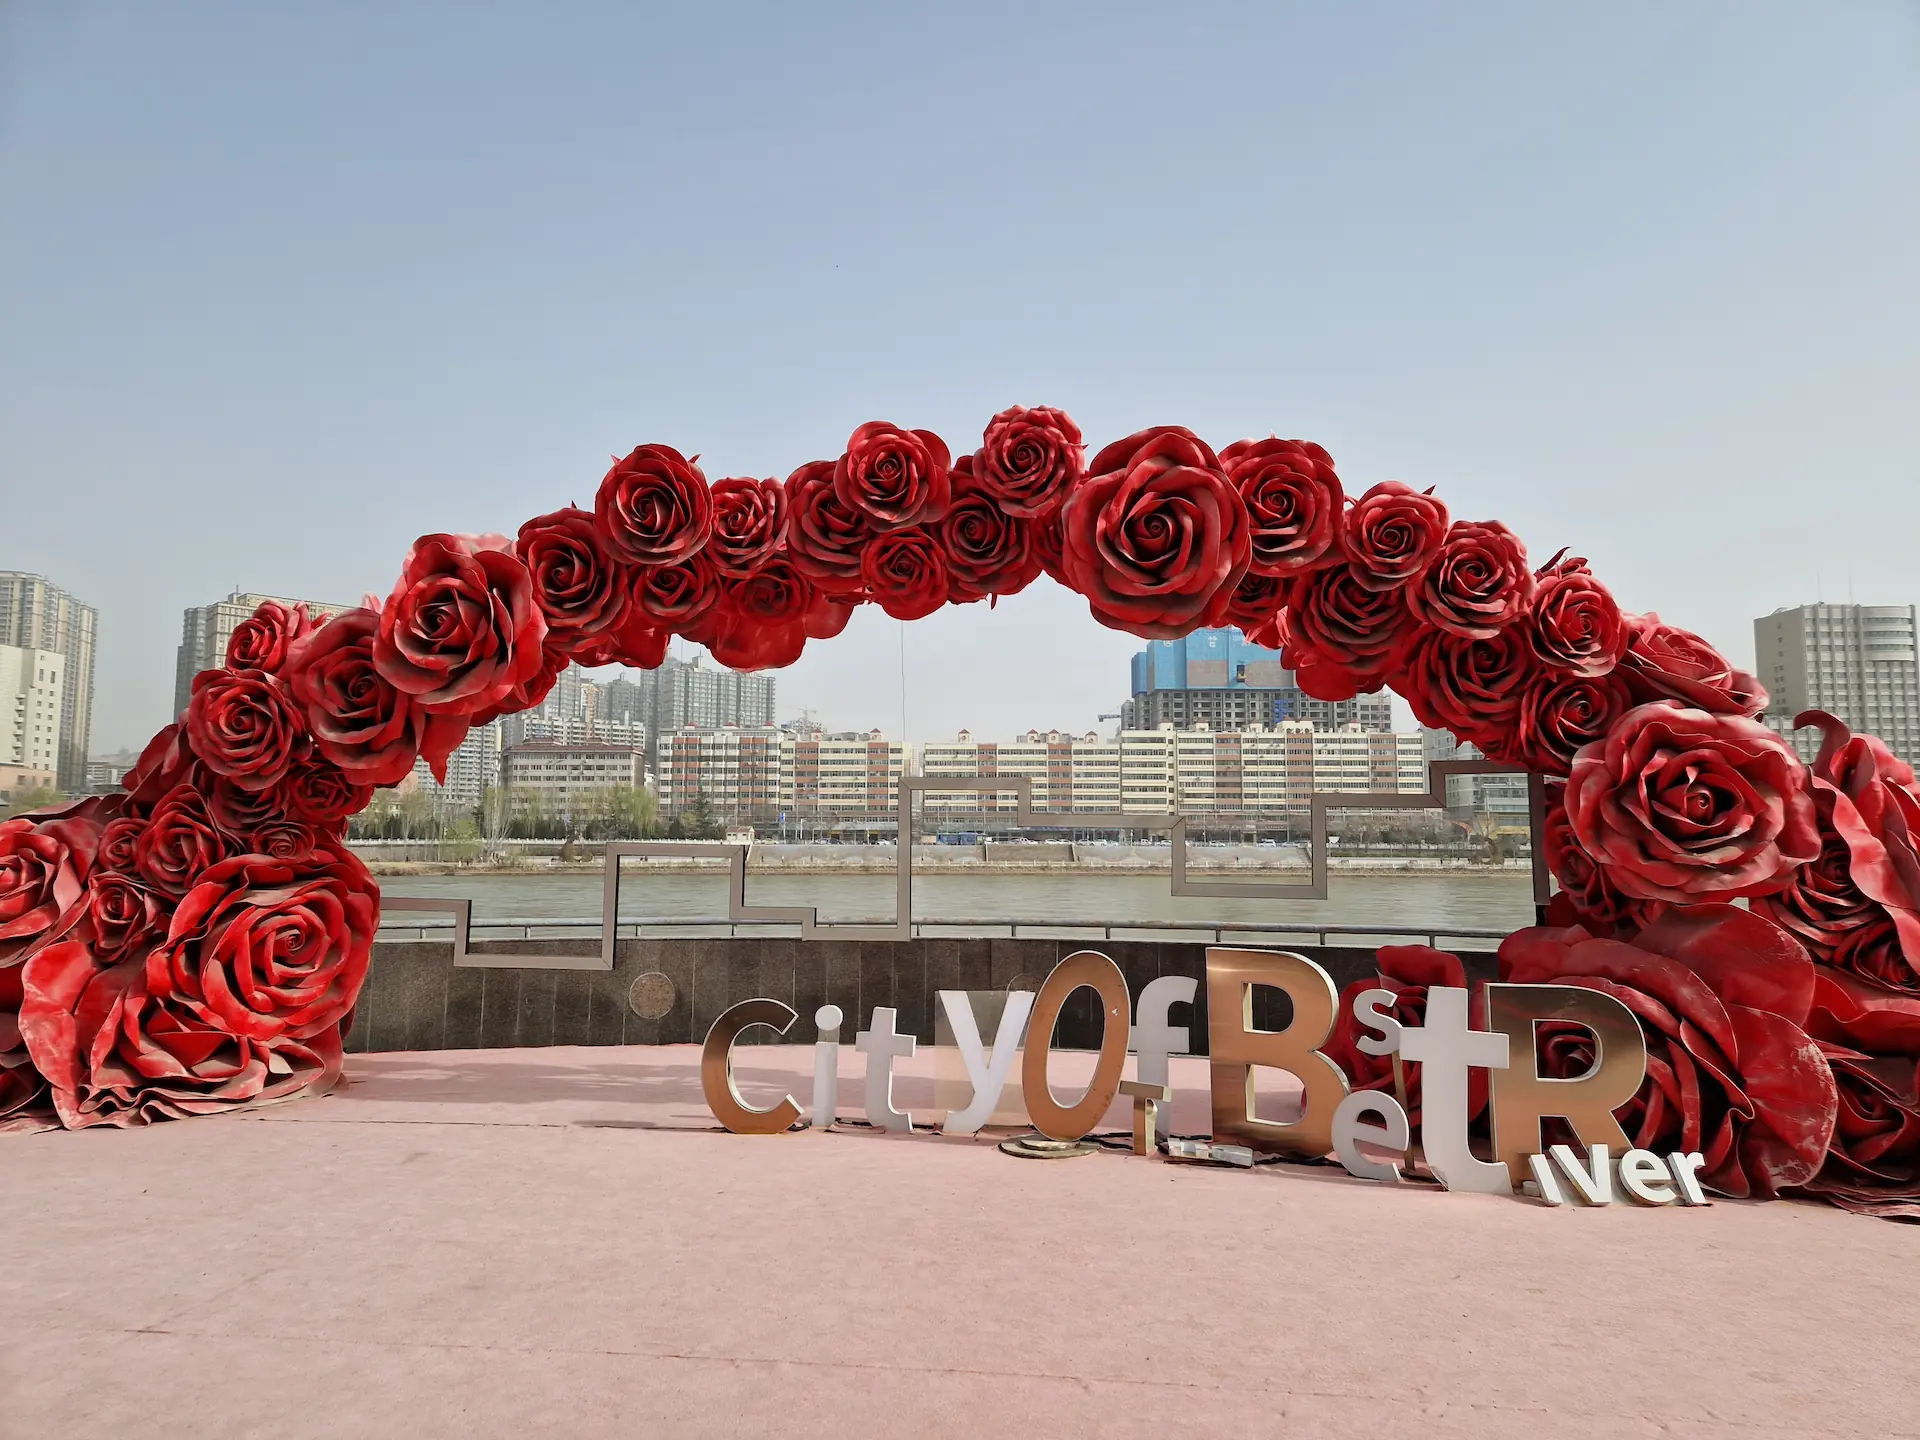 Une décoration de fausses fleurs rouges au bord du fleuve Jaune, avec l'inscription "City of Best River""